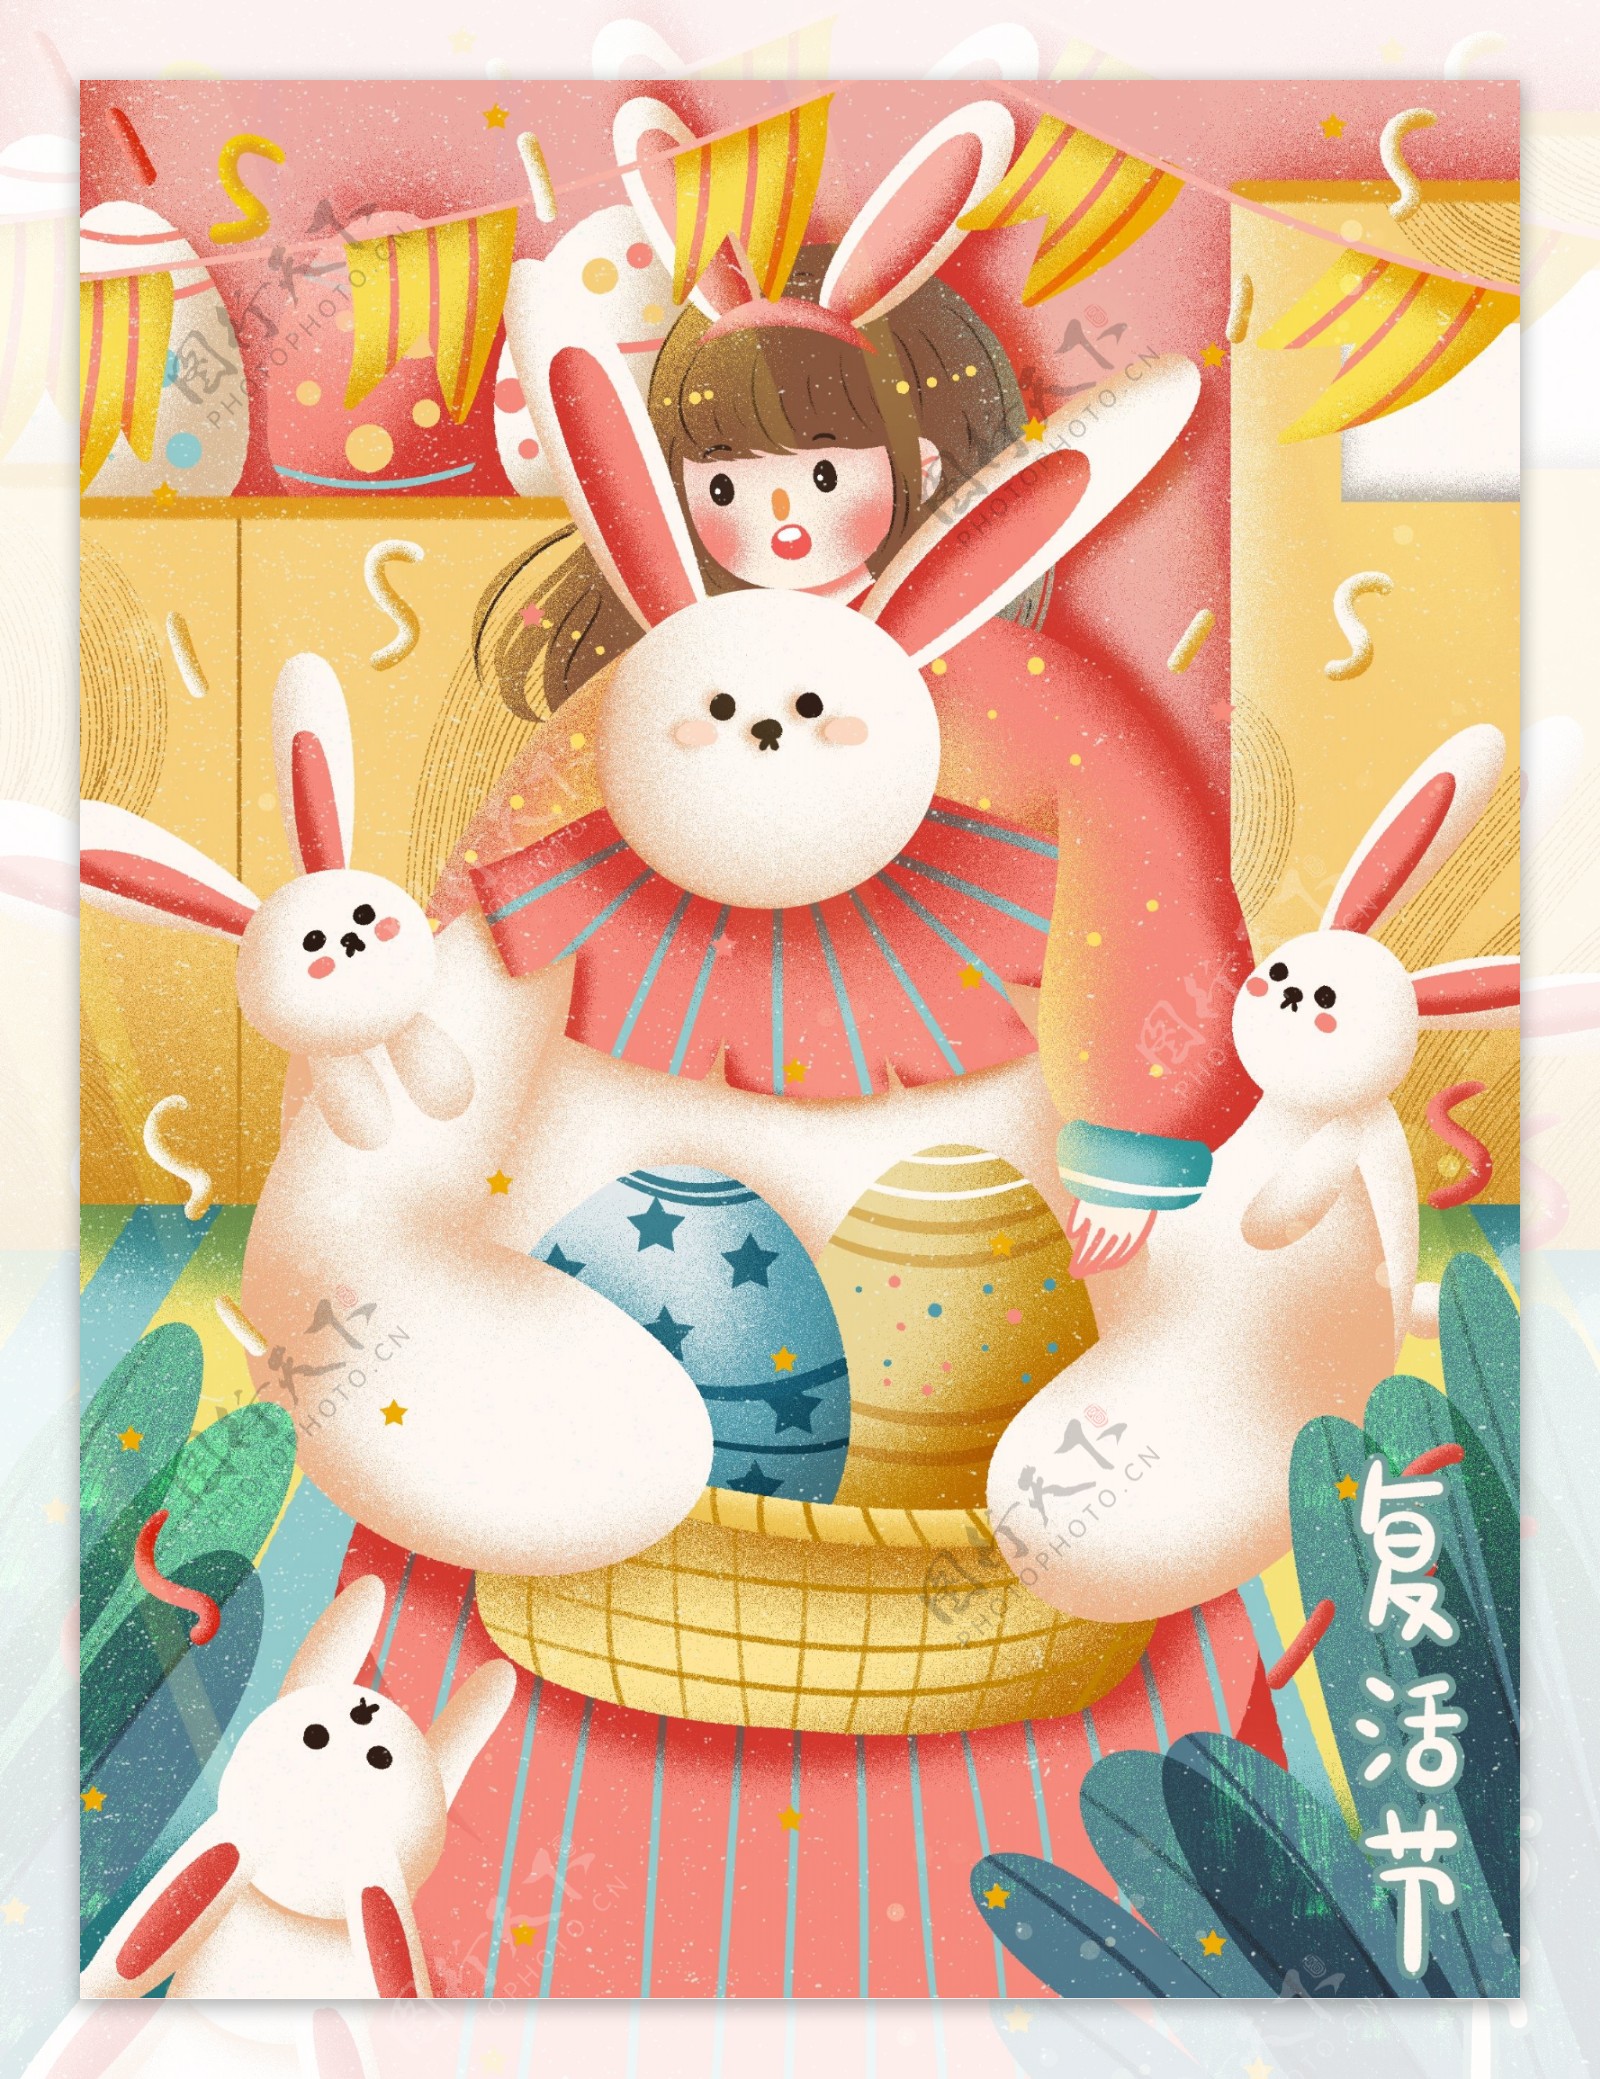 彩蛋兔子家庭创意可爱卡通庆祝派对插画海报